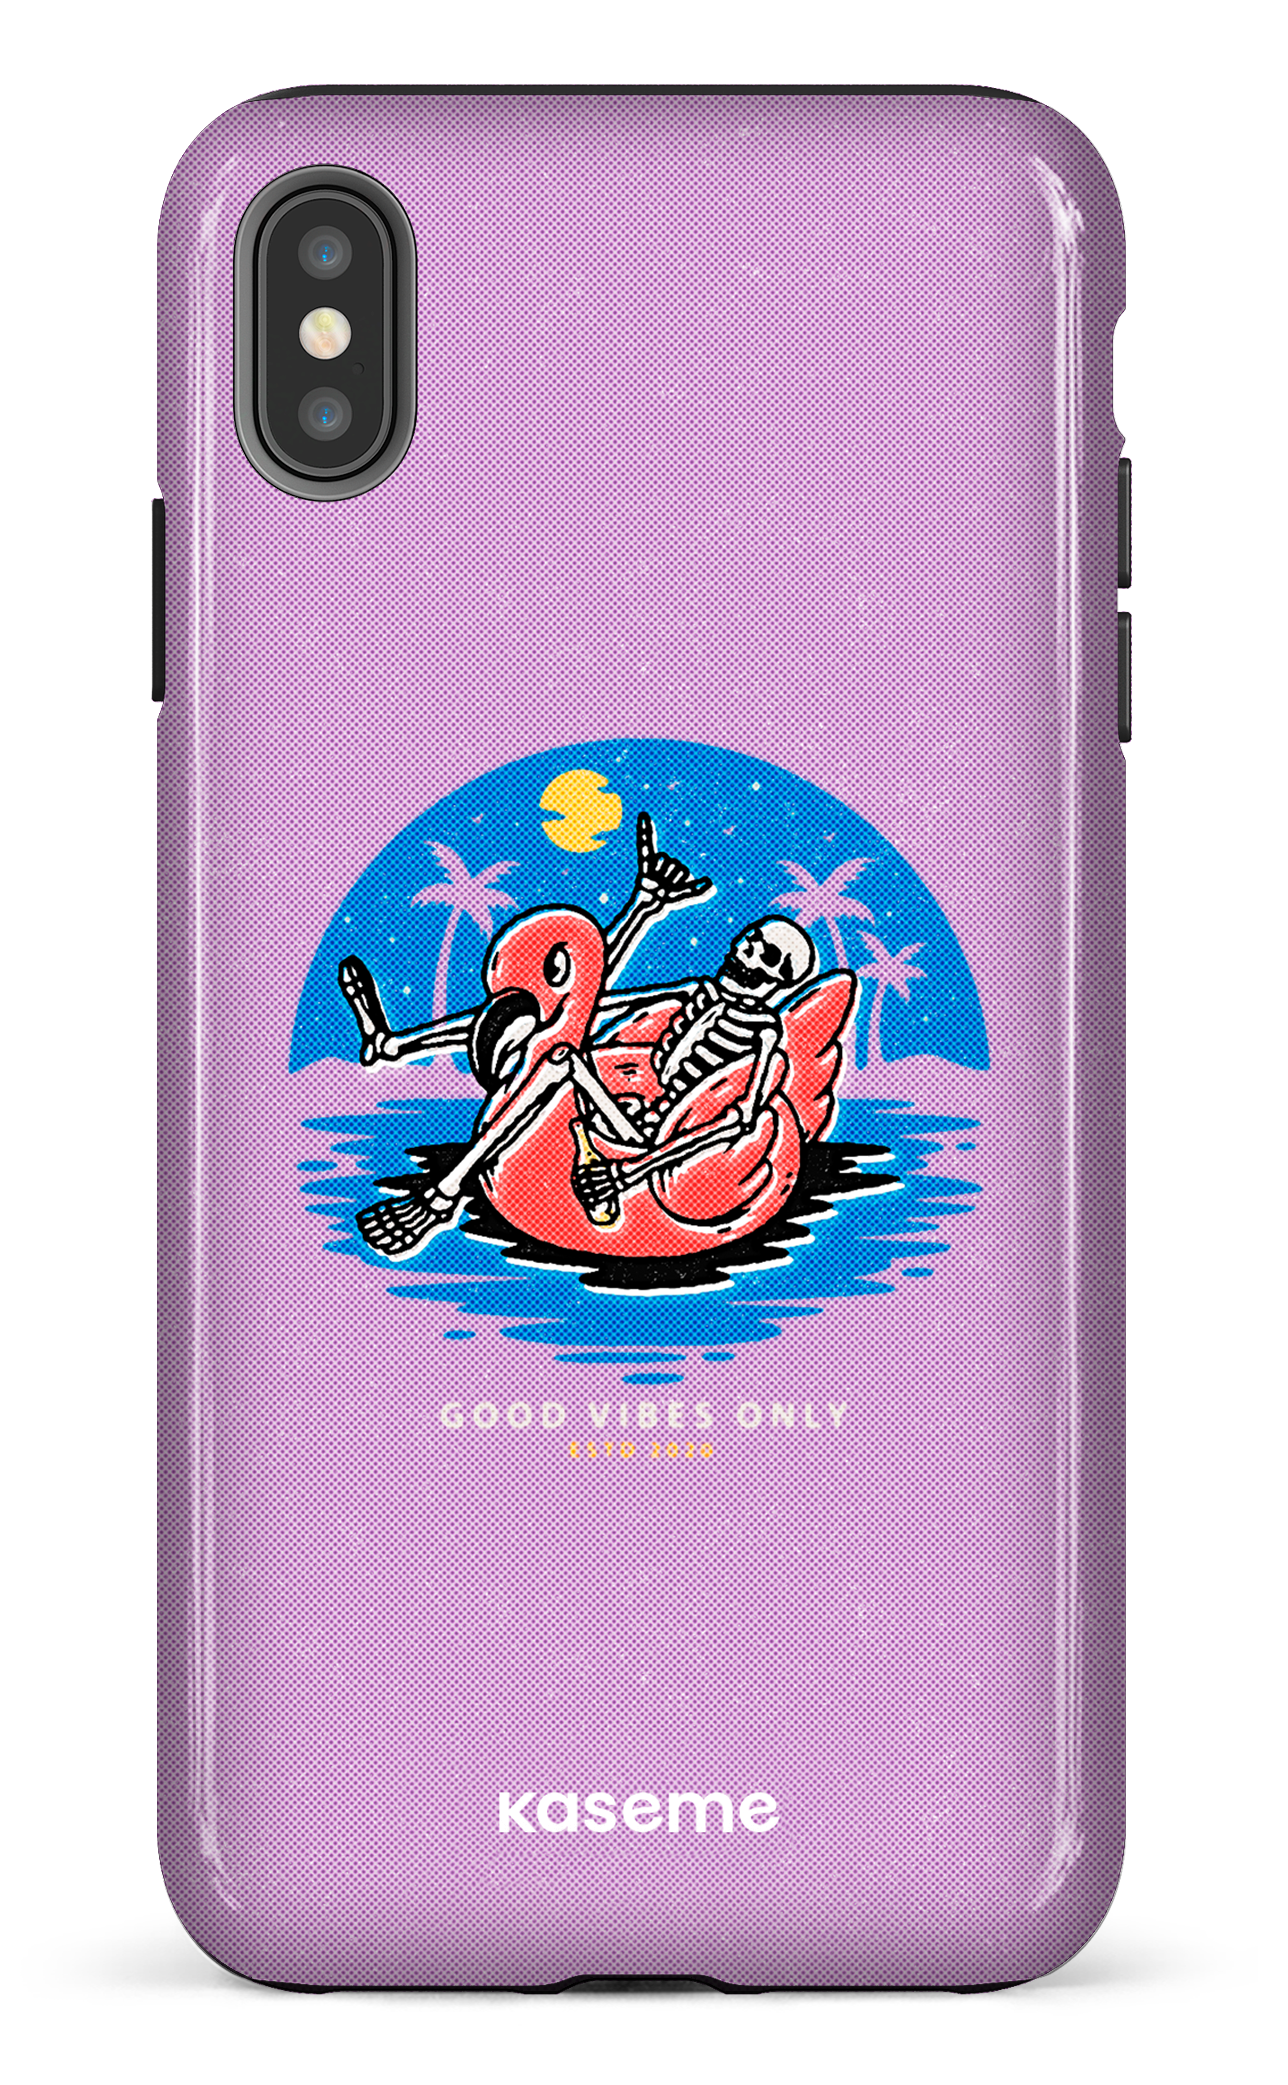 Seaside purple - iPhone XS Max